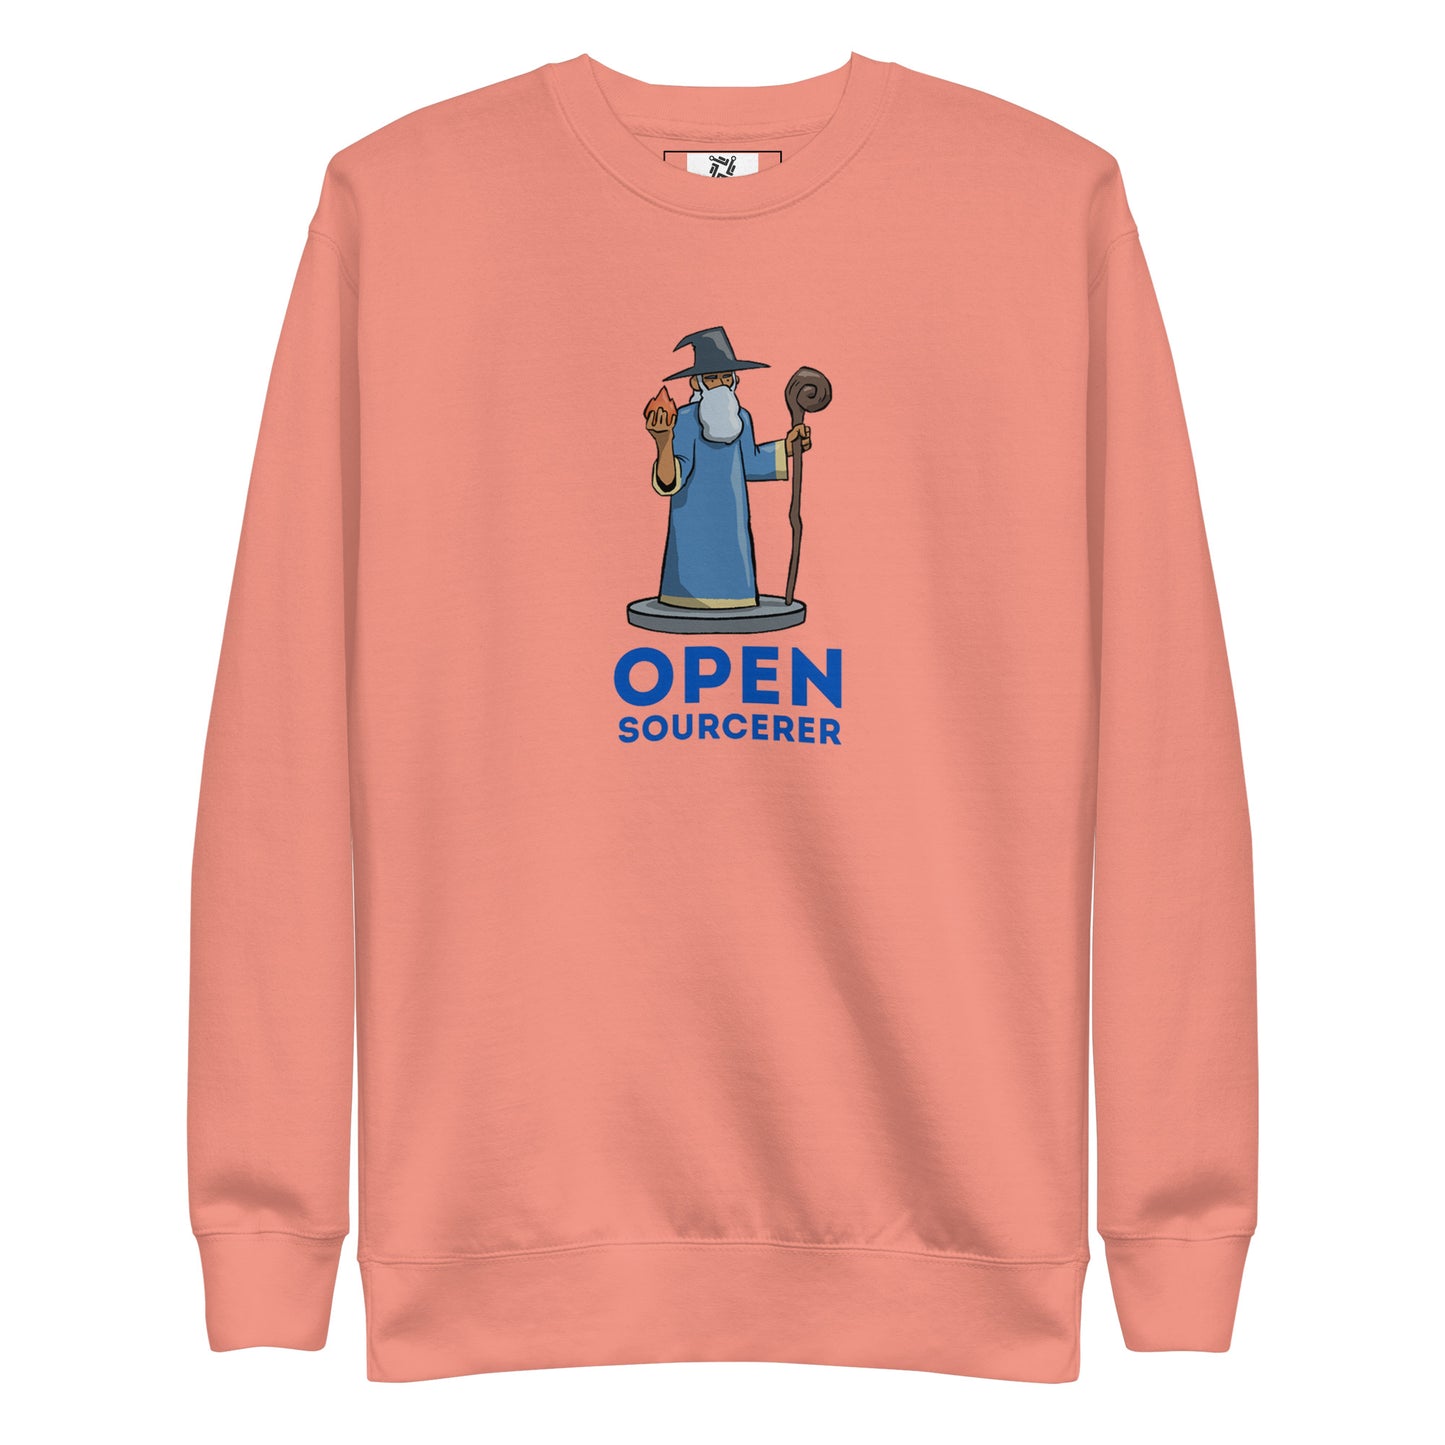 Open Sourcerer Sweatshirt - Light